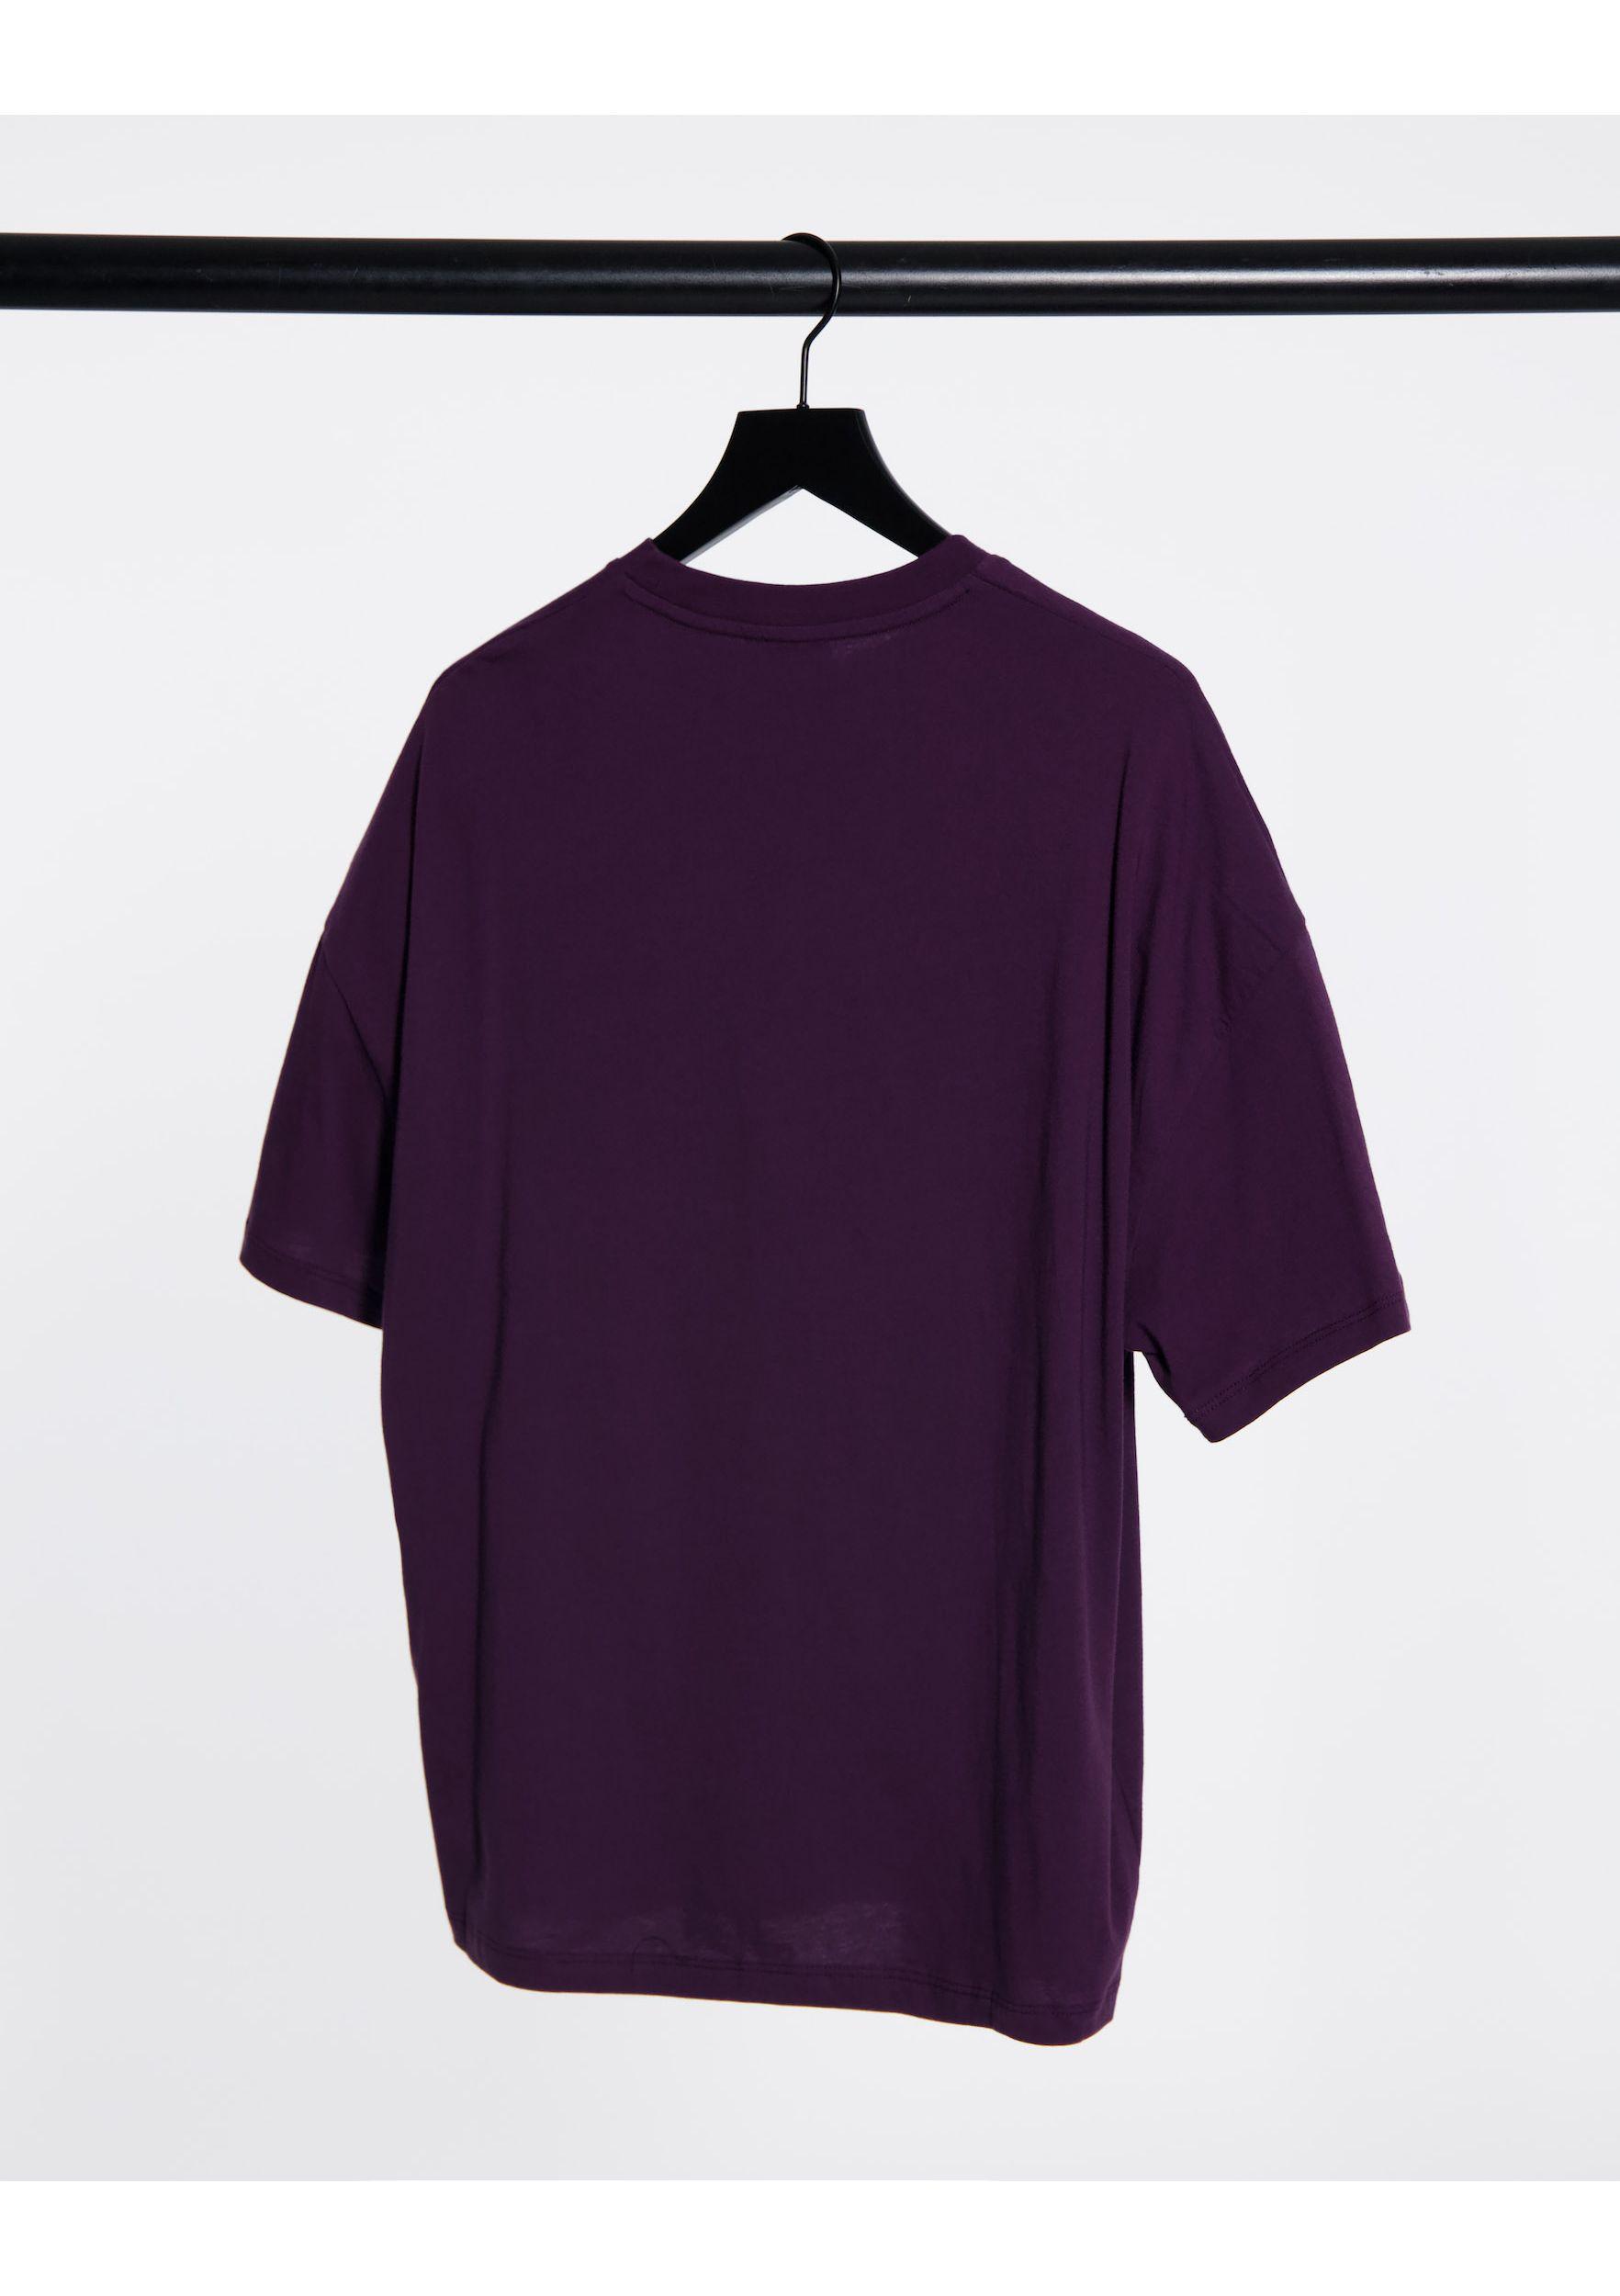 ASOS Oversized T-shirt in Purple for Men - Lyst